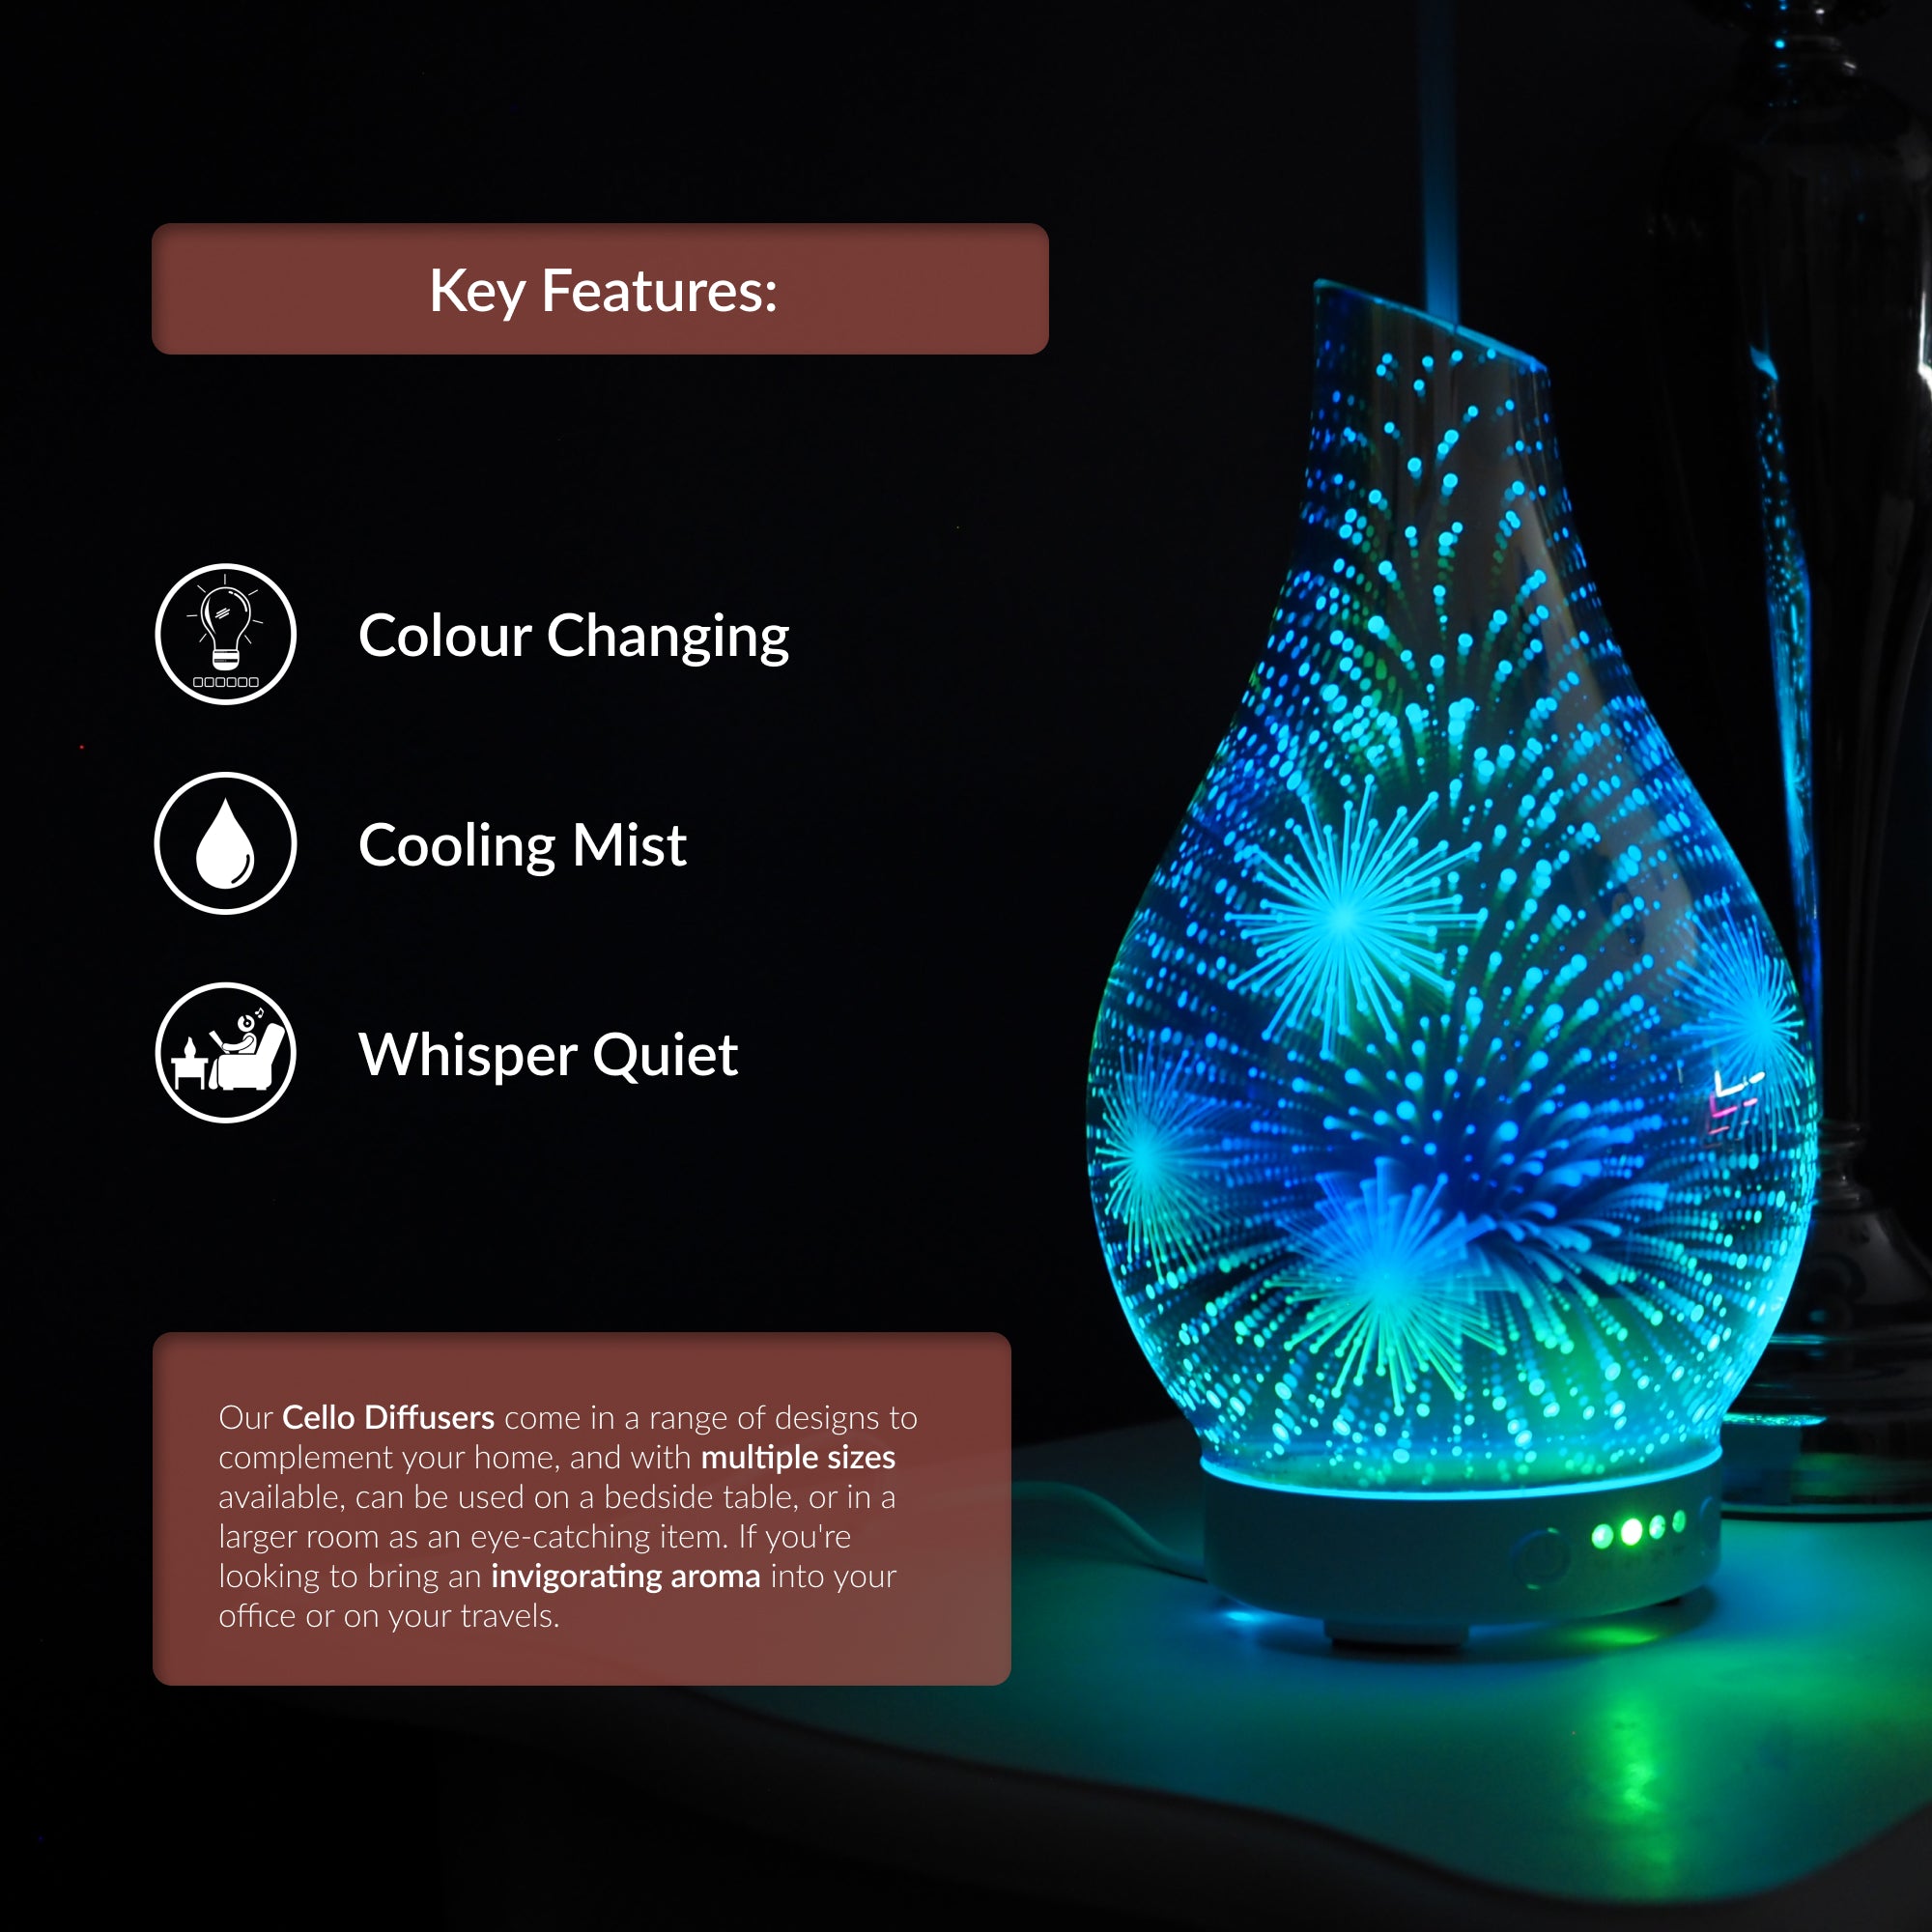 Ultrasonic Diffuser Art Glass - Firework 3D